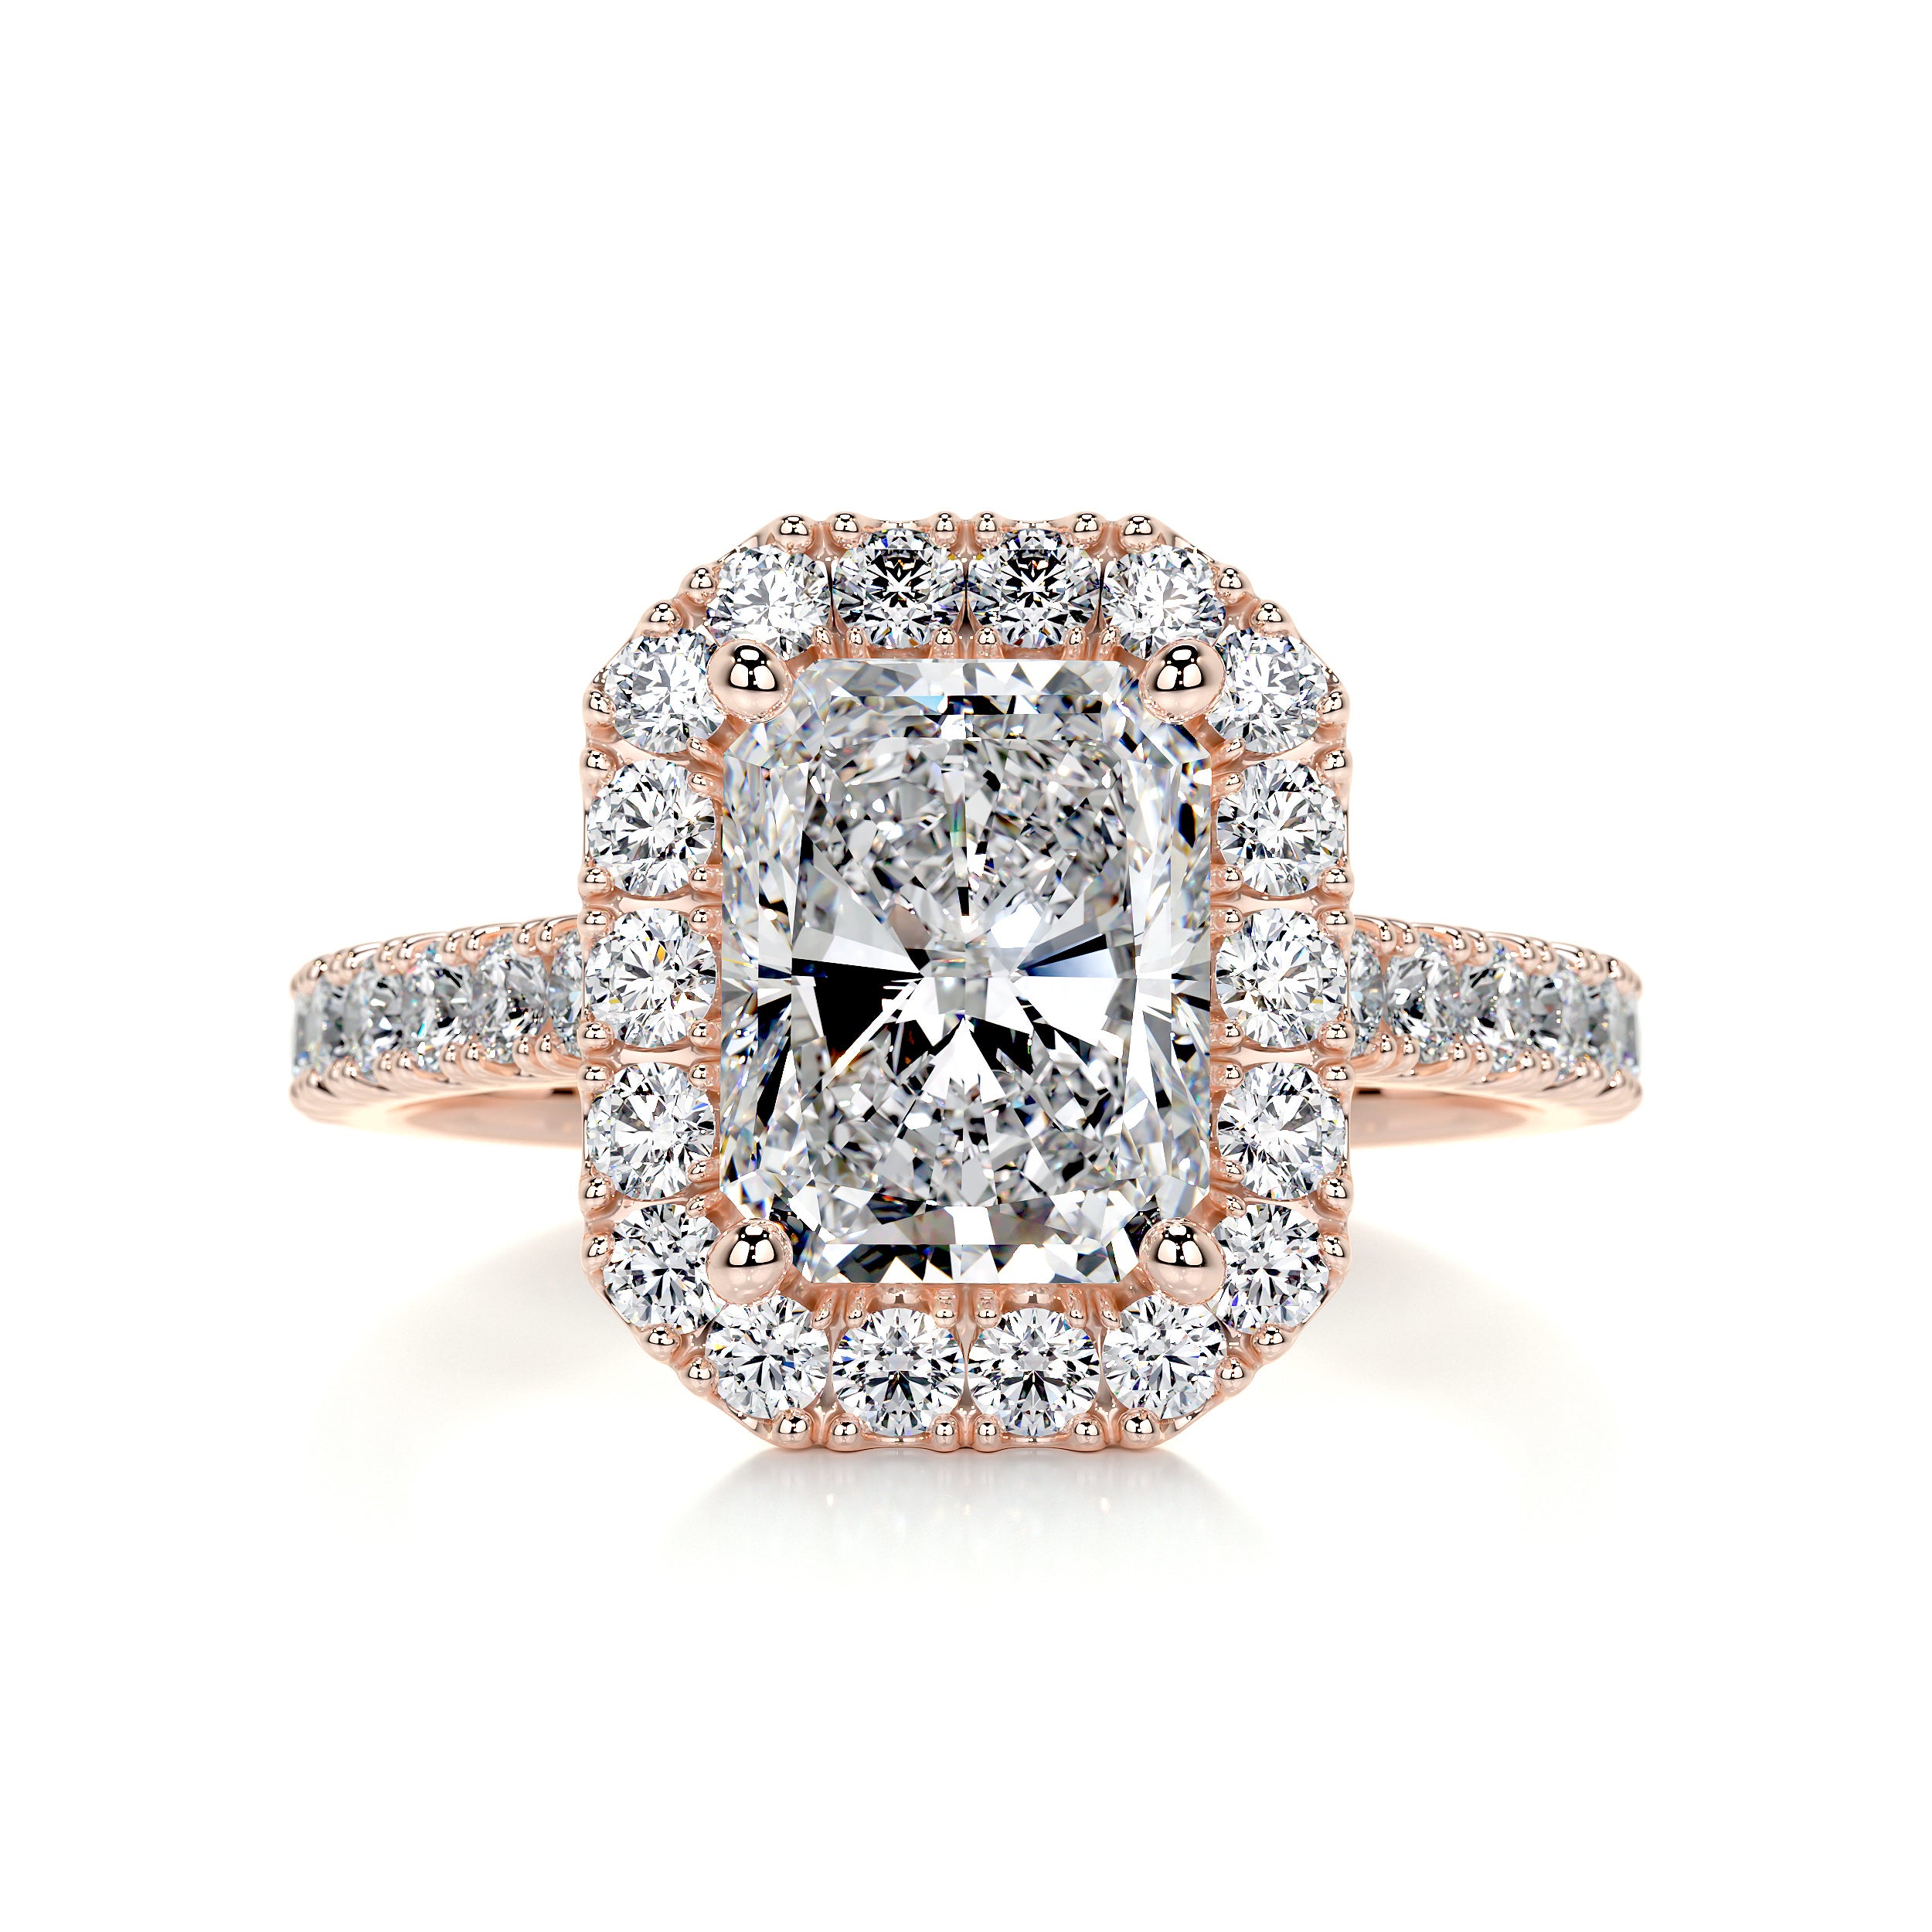 Andrea Diamond Engagement Ring -14K Rose Gold